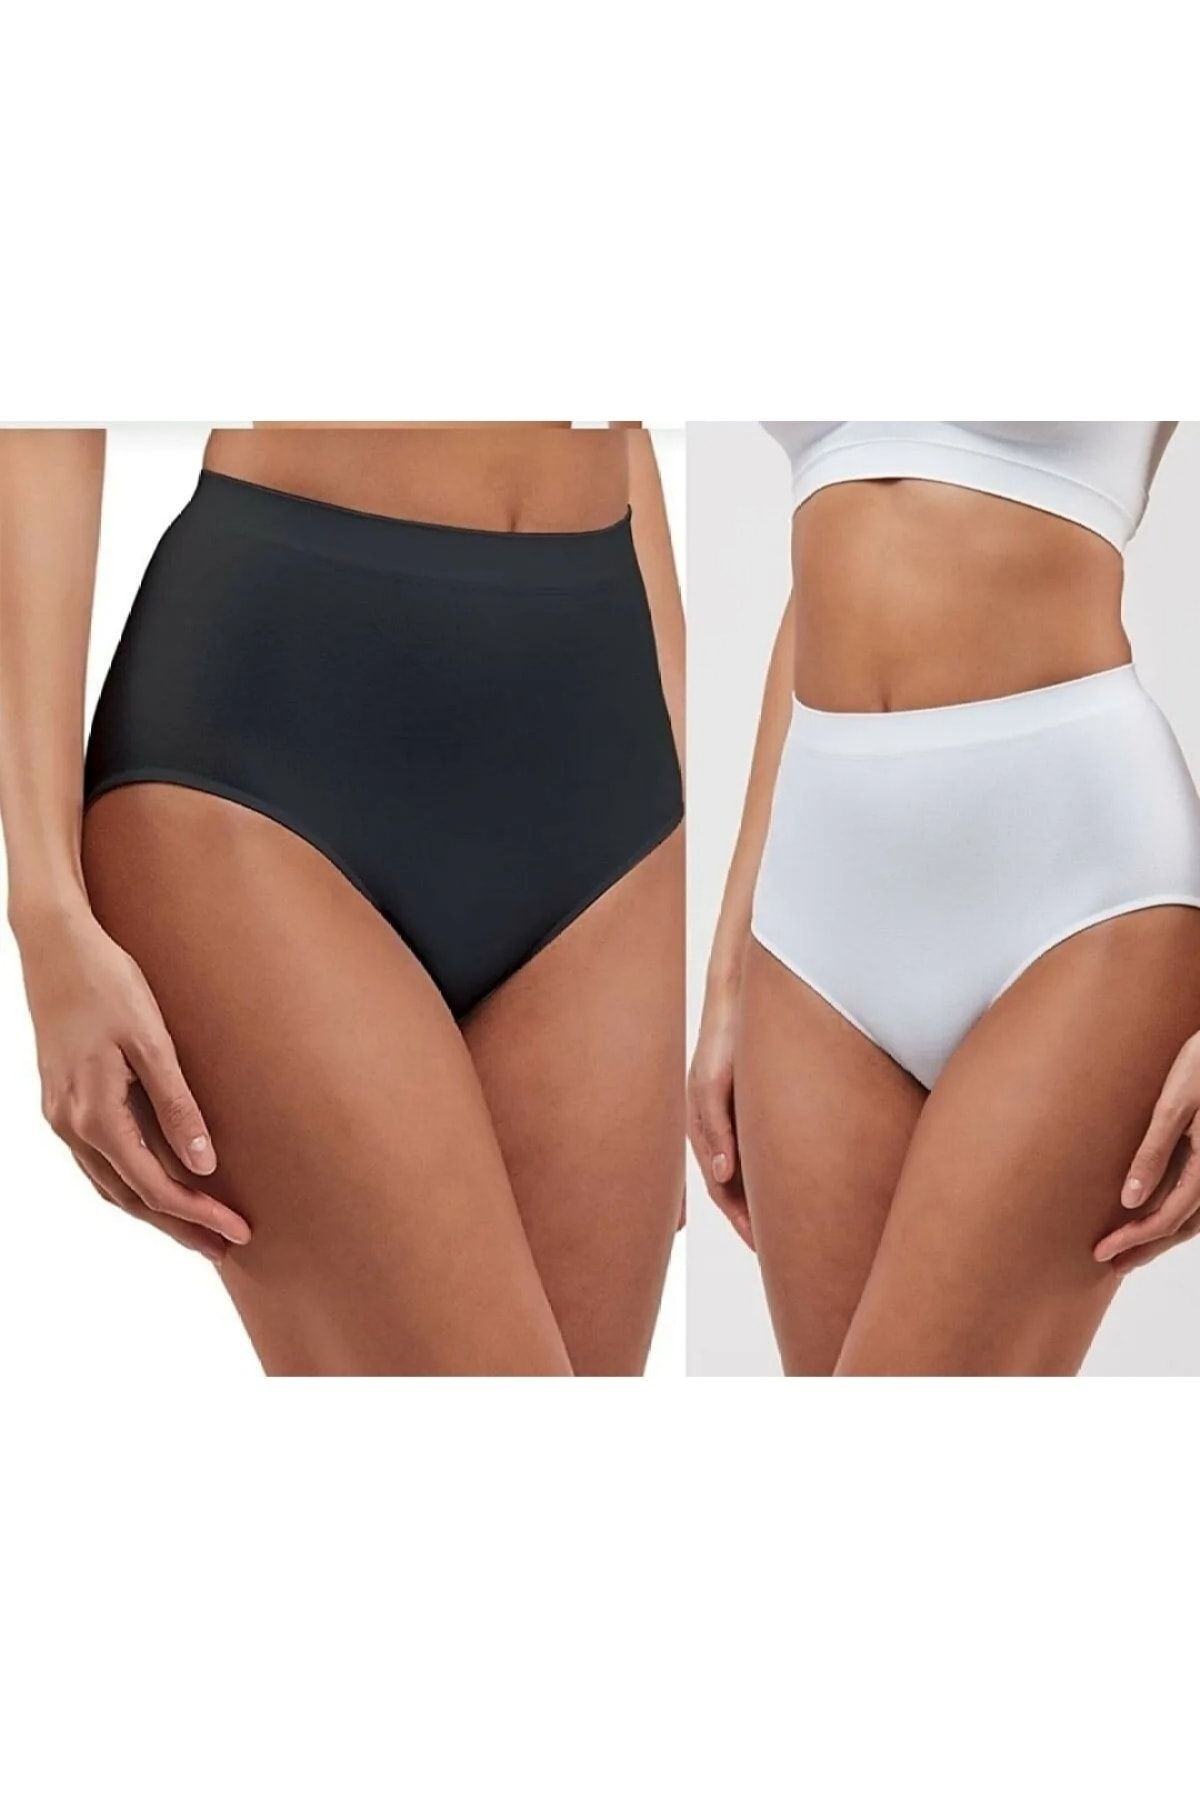 SR&AR MAĞAZACILIK Ekstra Yüksek Bel Iz Yapmayan Lazer Kesim Kadın Bikini Külot 2'li Paket Efsa Trend